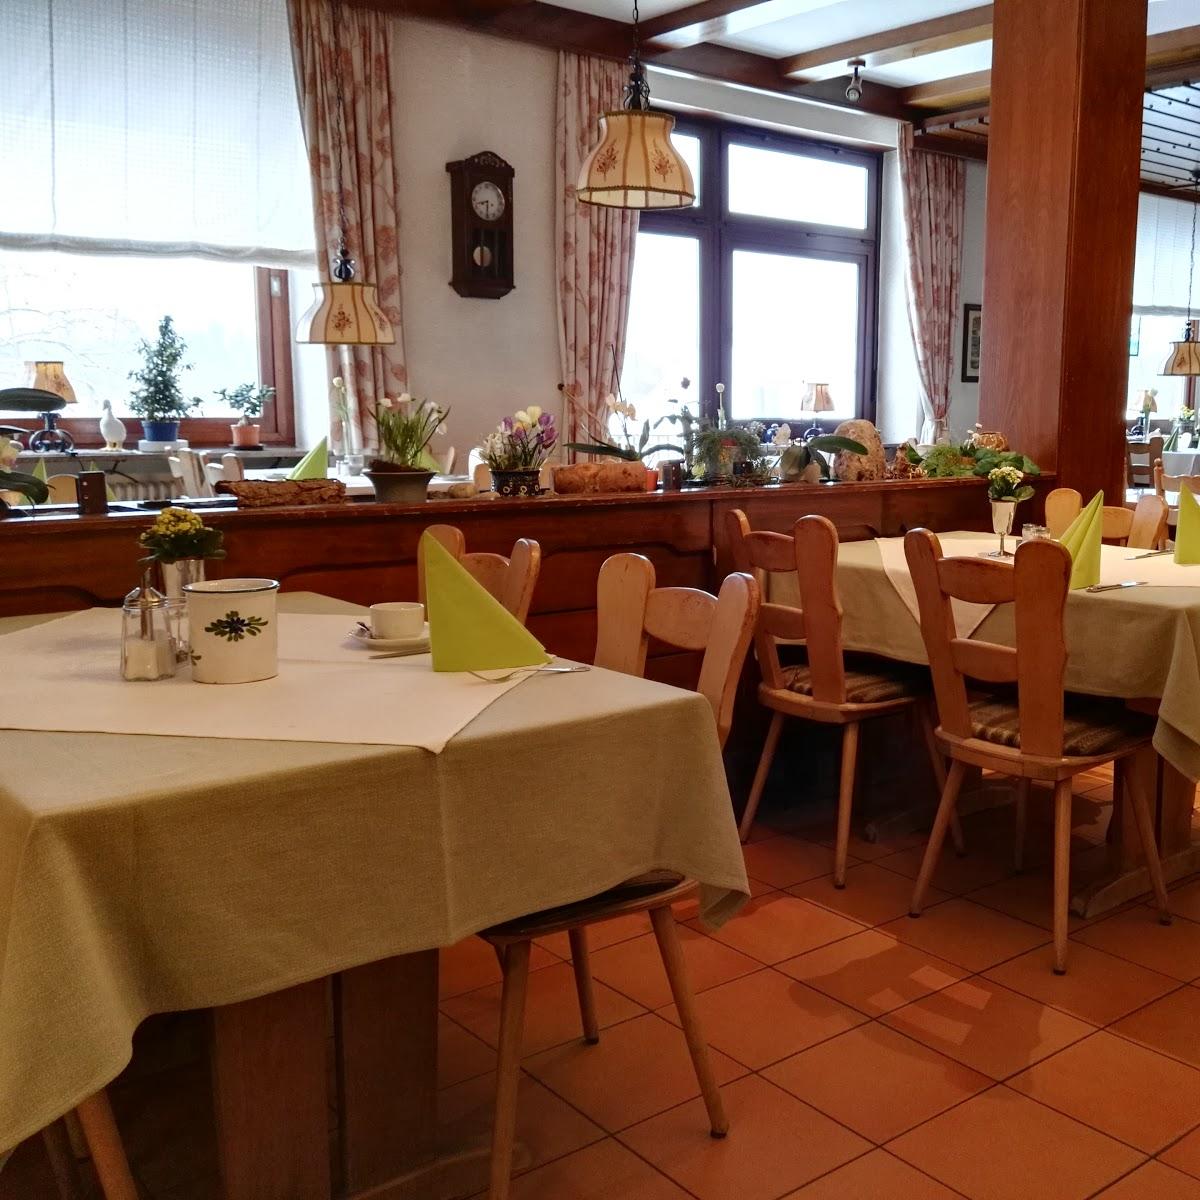 Restaurant "Hotel Restaurant Krone" in  Waldbronn